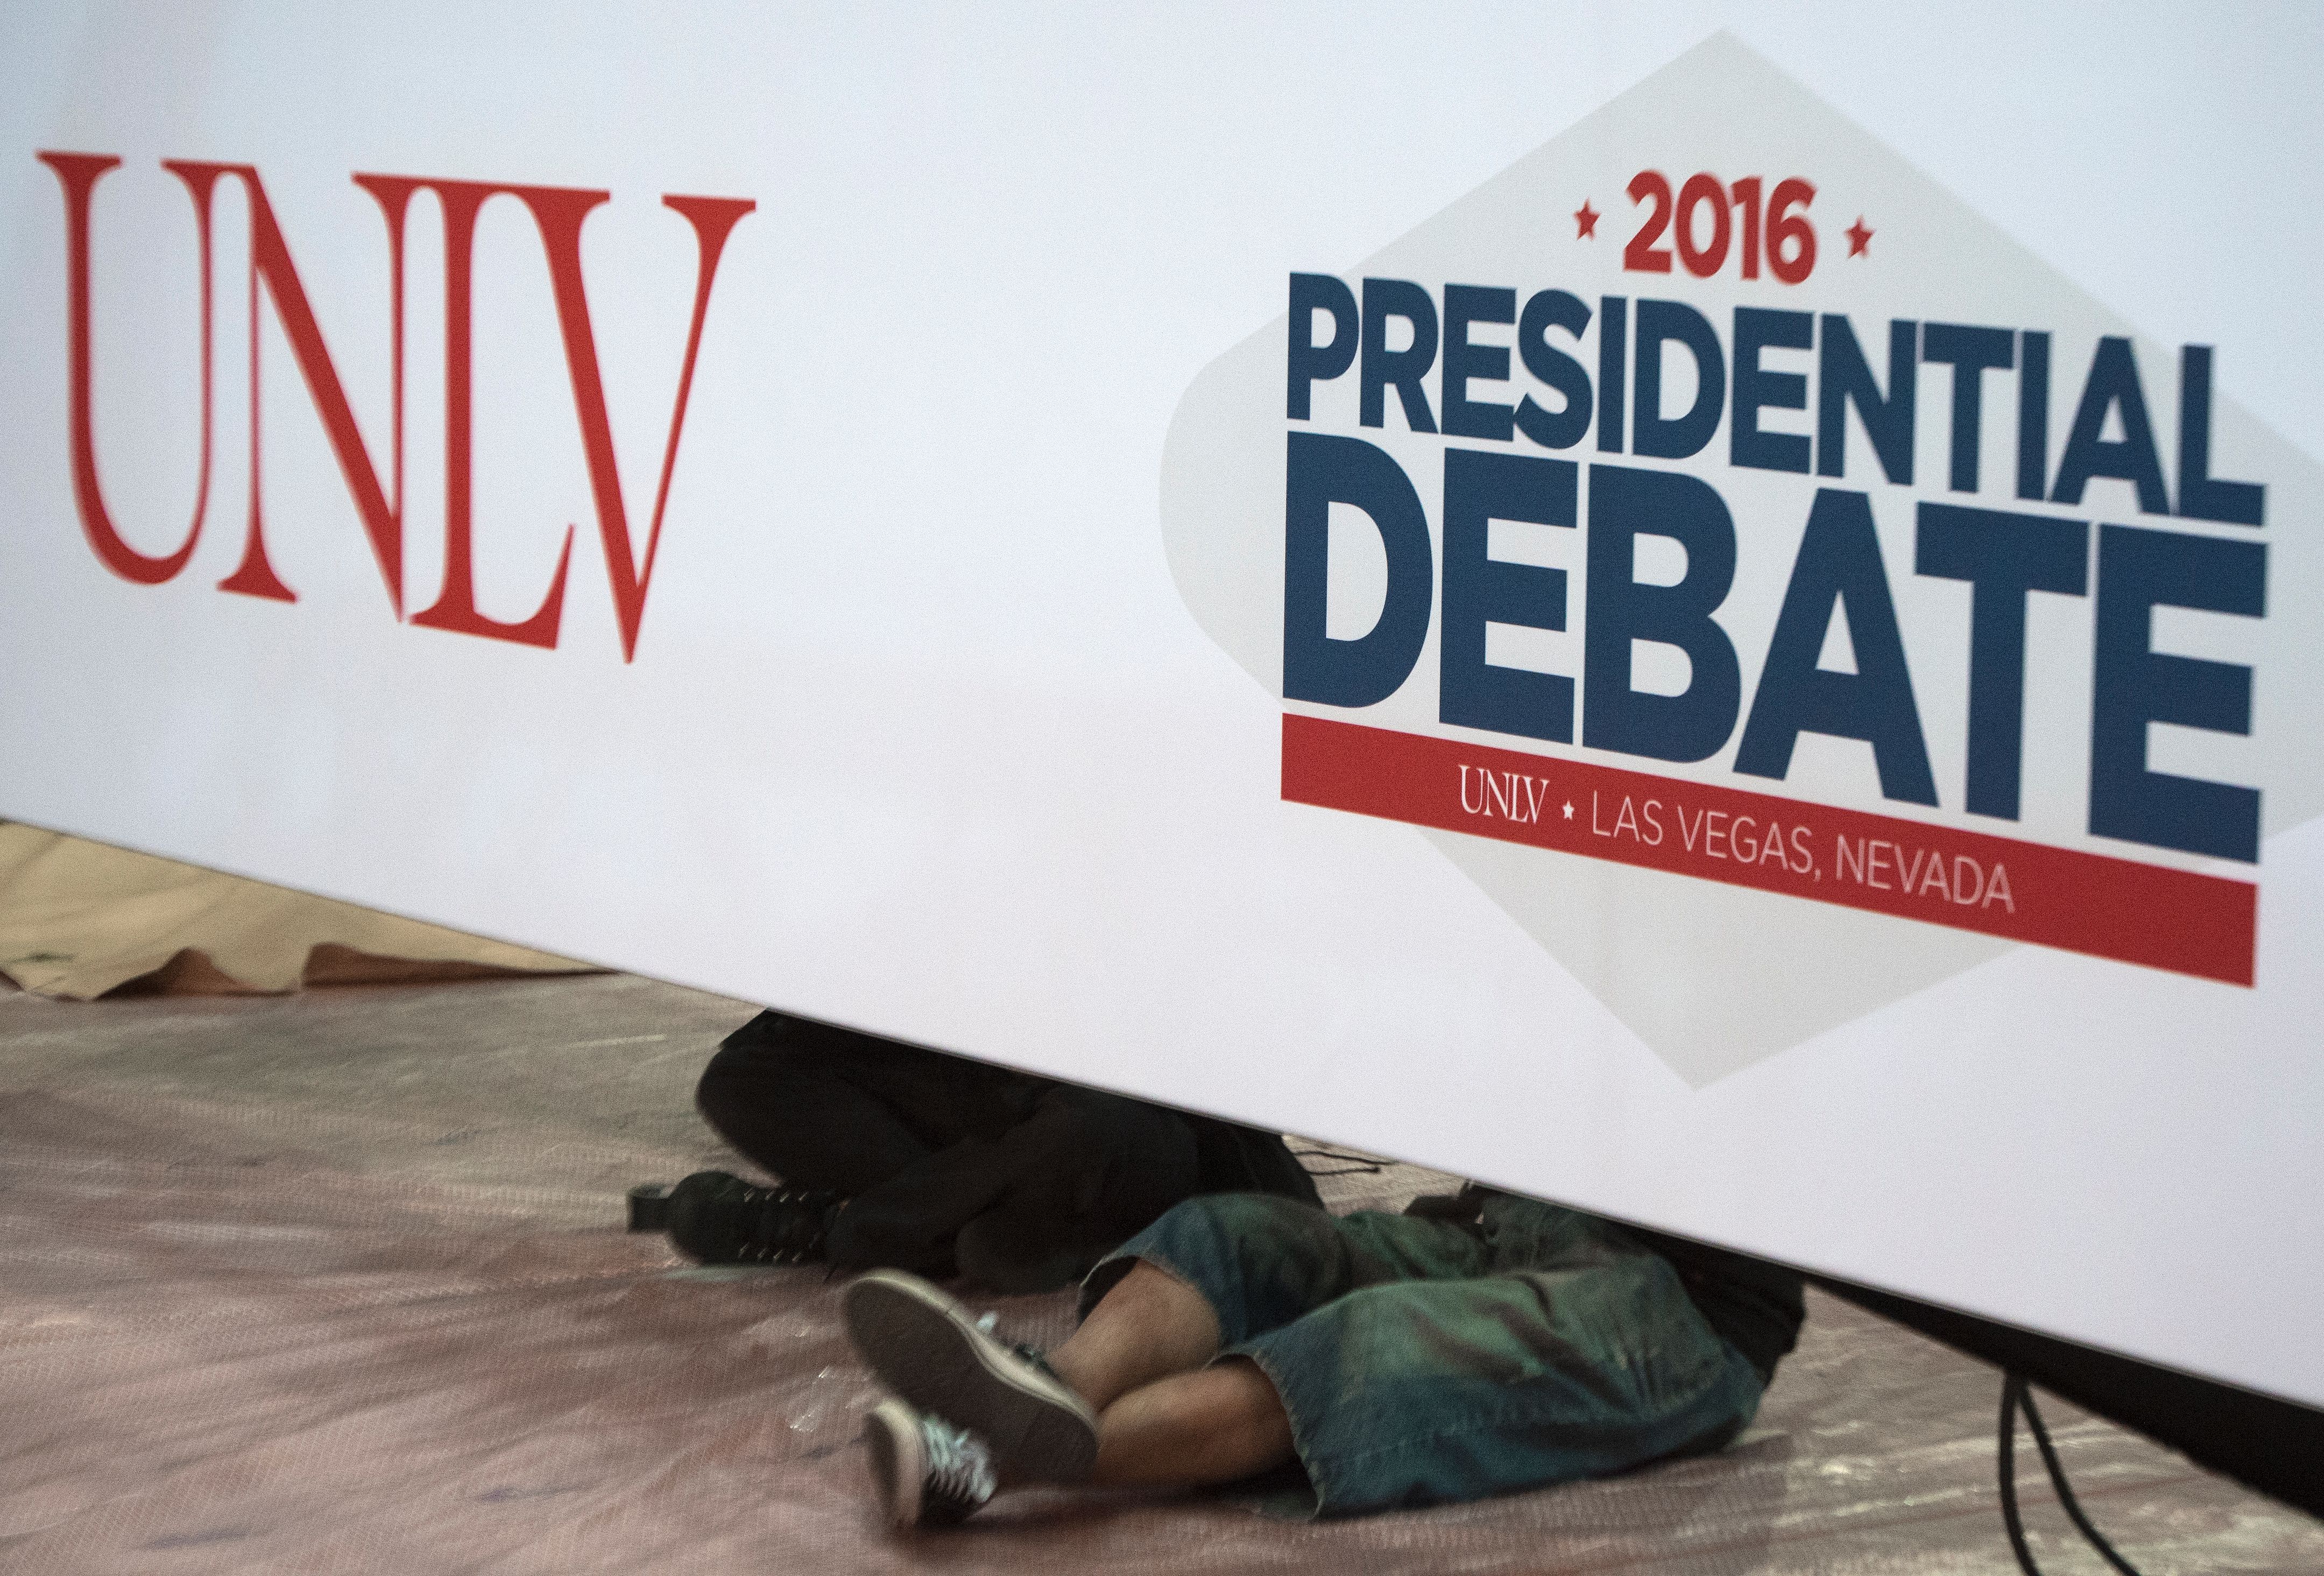 UNLV, University of Nevada Las Vegas, third debate venue, Thomas & Mack Center